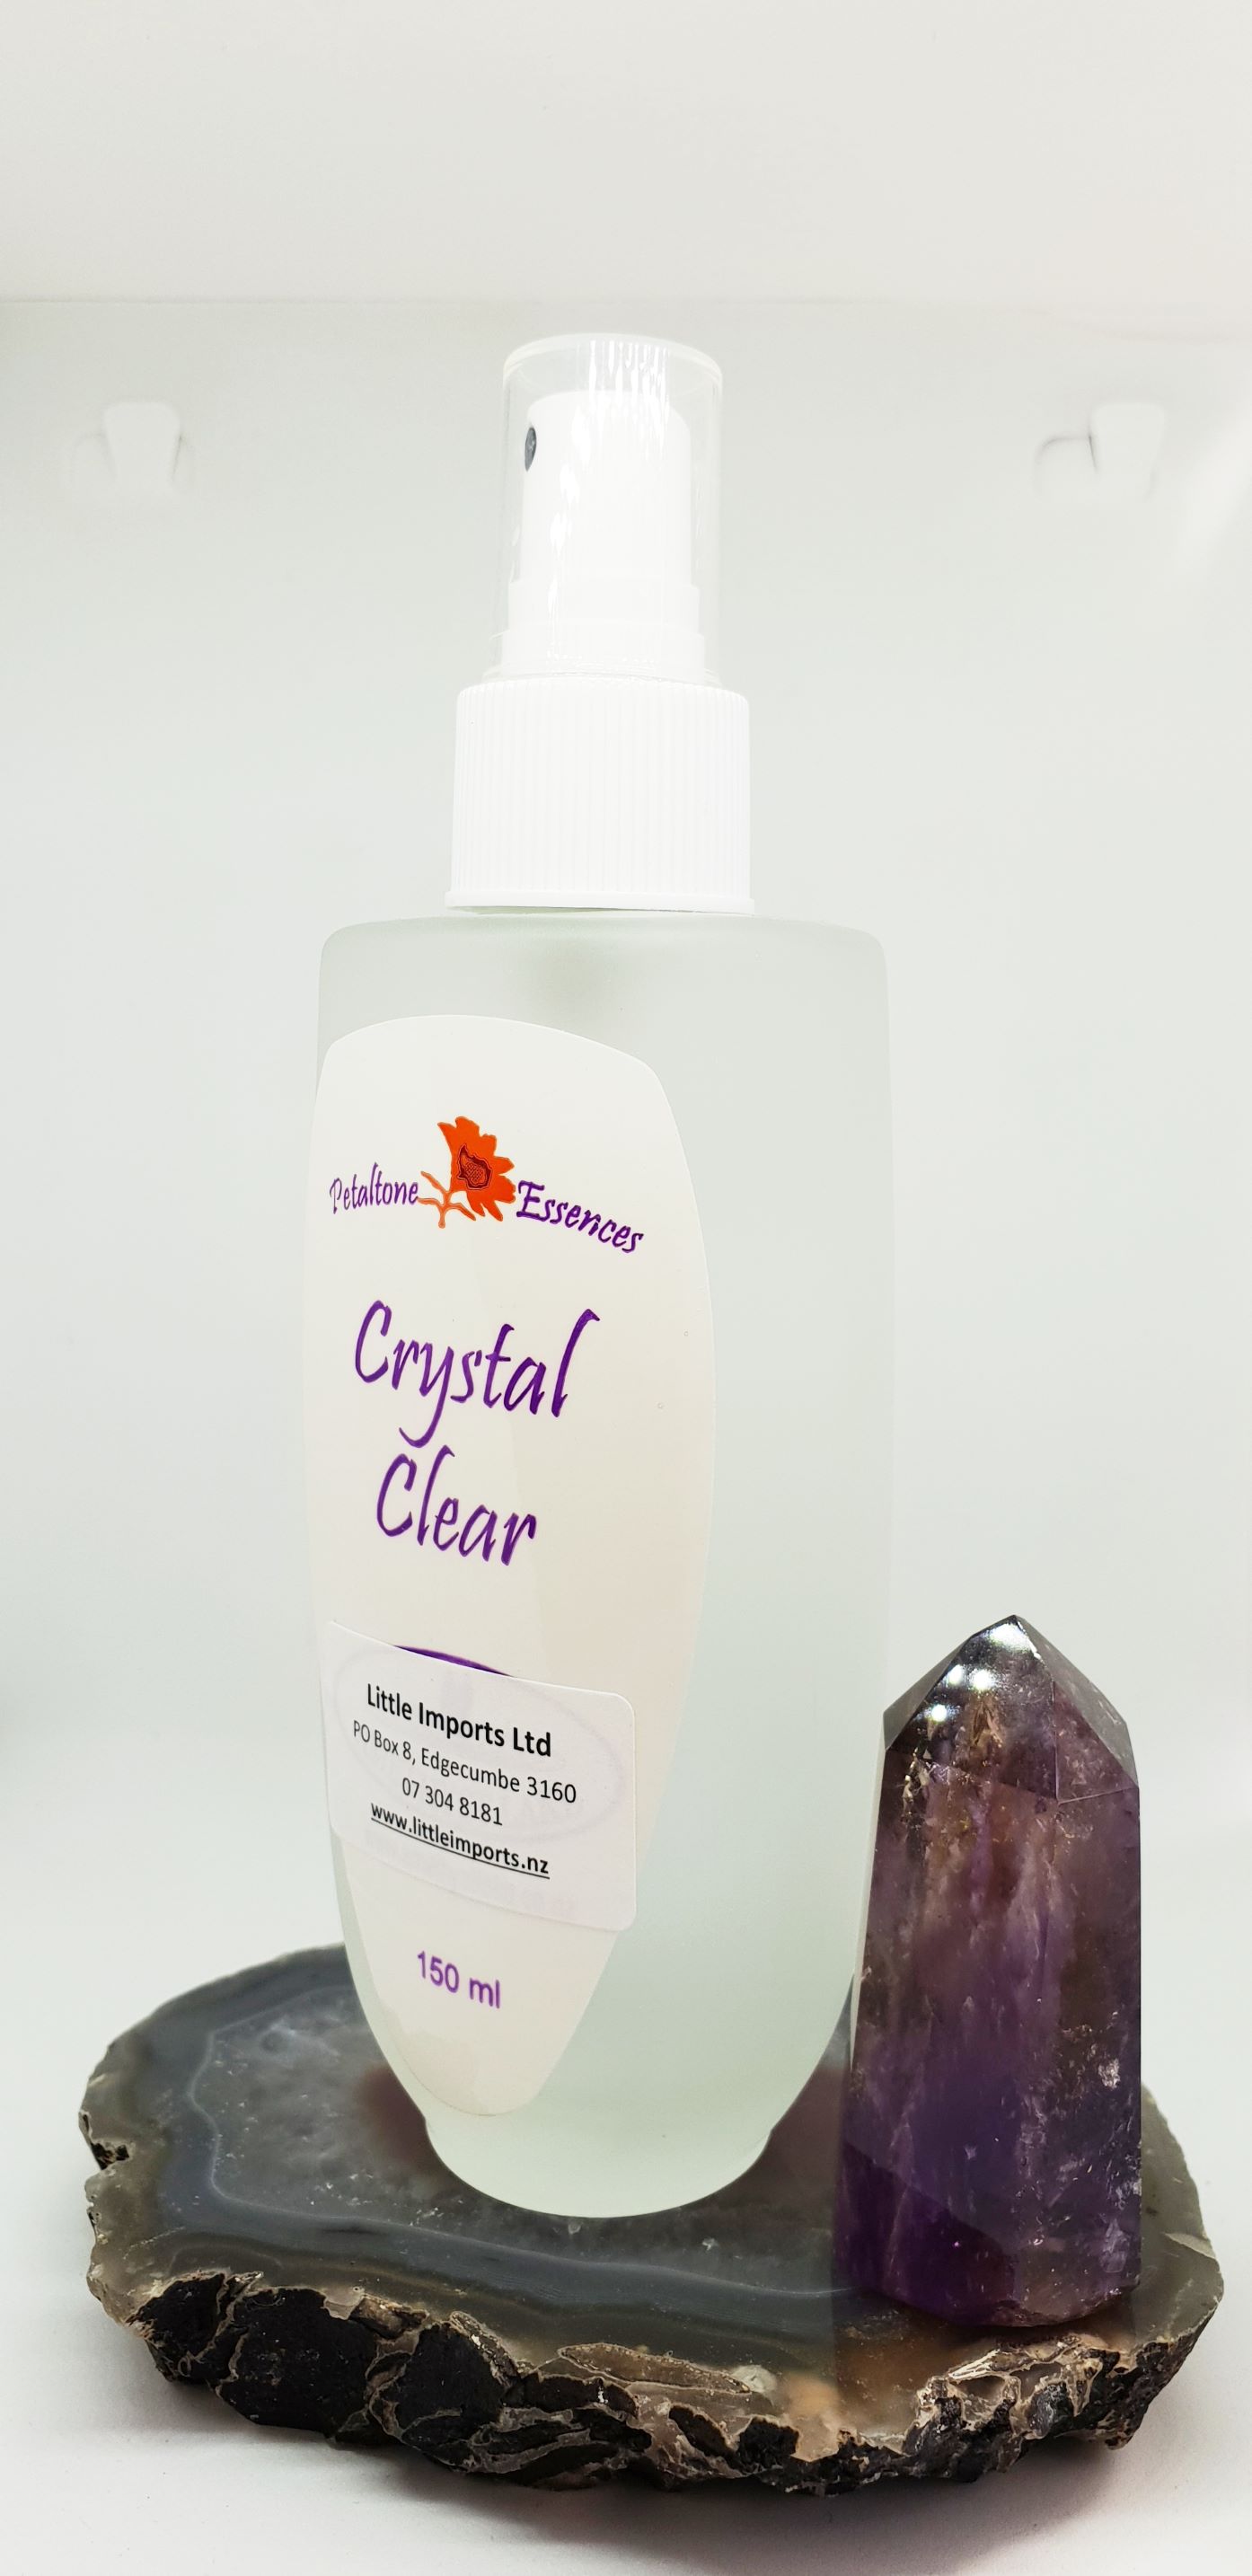 Crystal Clear Spray